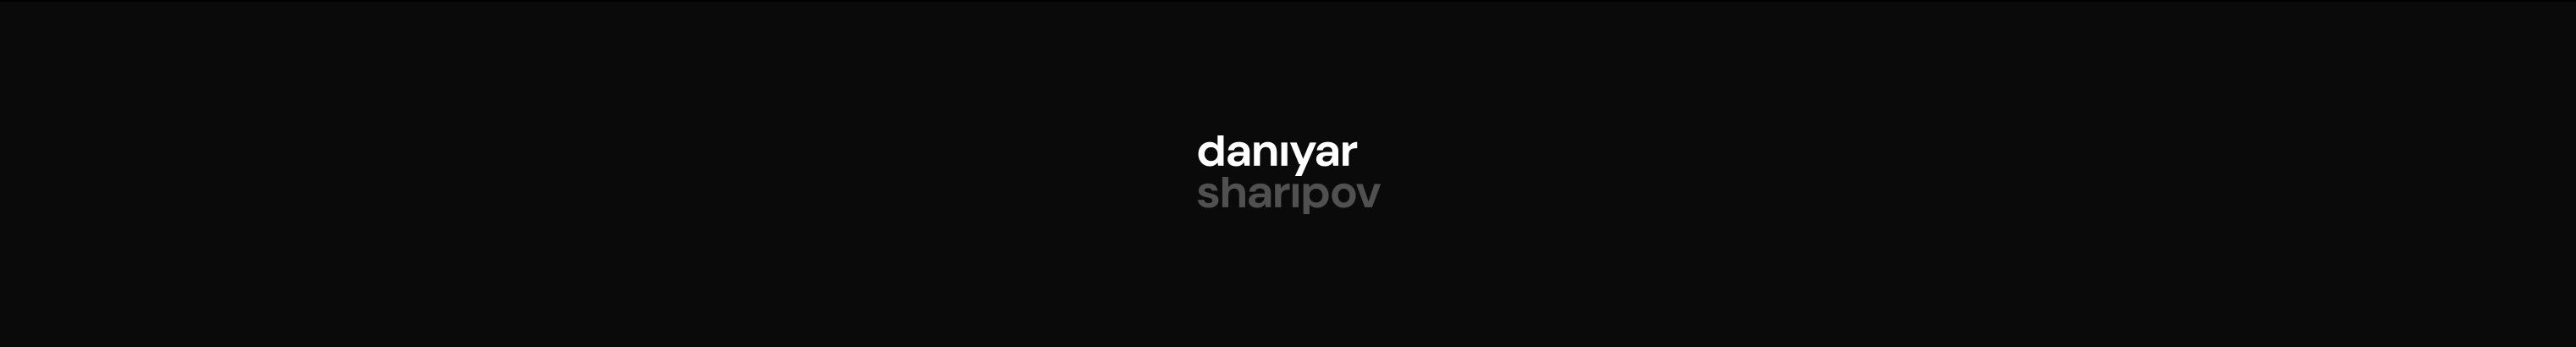 Daniyar Shape's profile banner